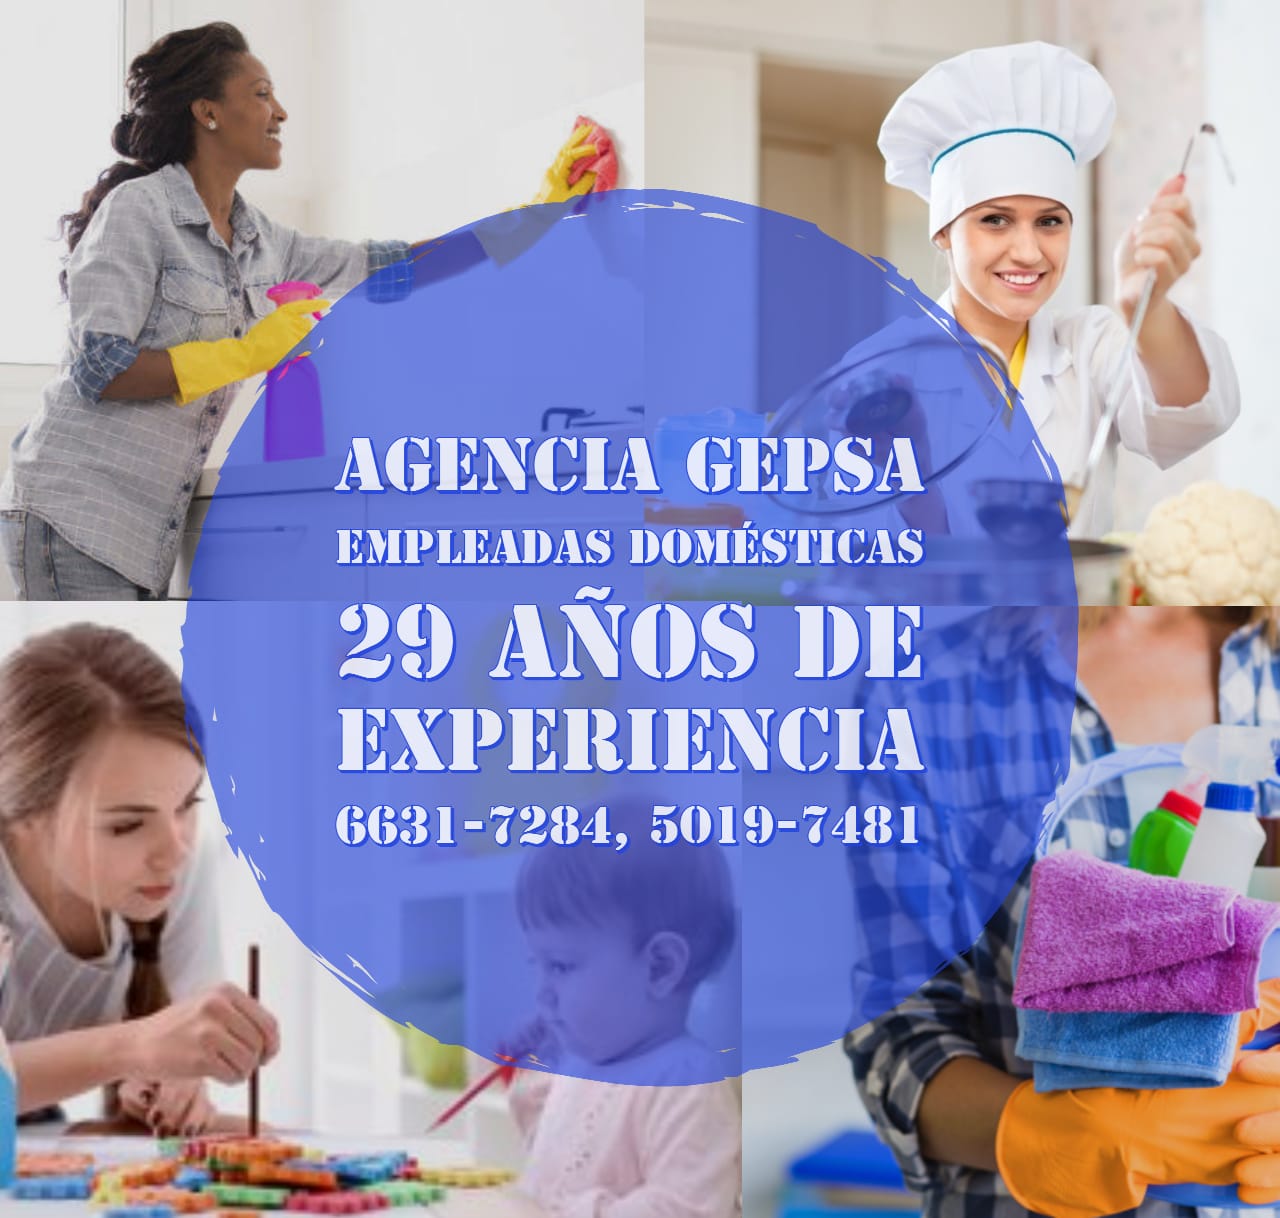 Agencia de Empleadas Domésticas GEPSA, 29 años de experiencia